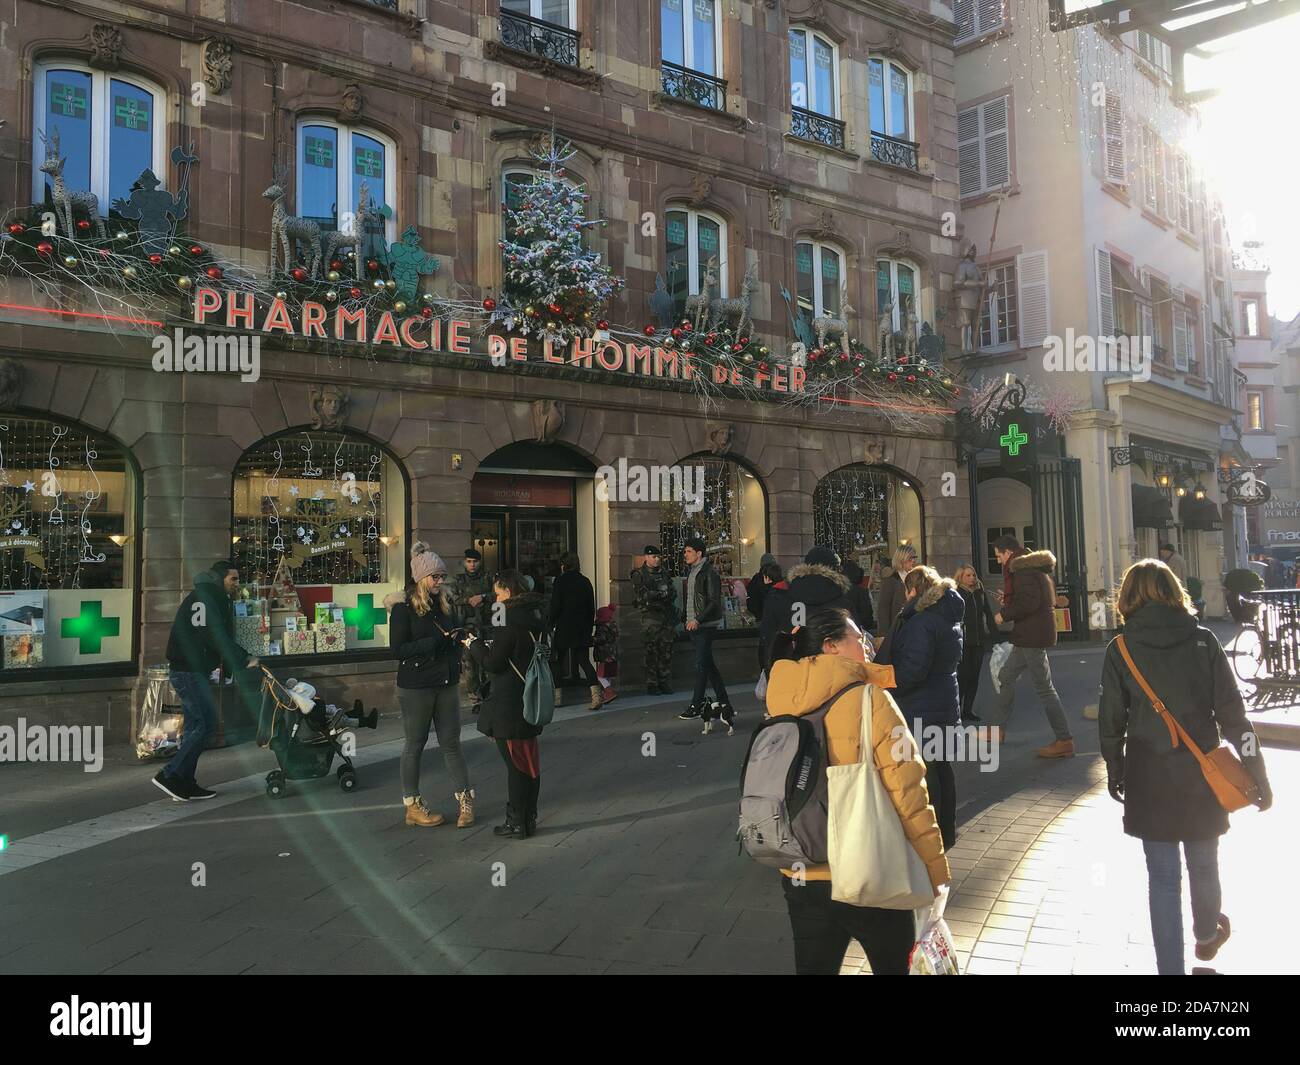 Straßburg, Frankreich - 3. Dezember 2016: Große Gruppe von Fußgängern und schöne Sonneneinstrahlung auf dem zentralen Platz Homme de Fer und Apotheke Drogerie mit dem gleichen Namen Stockfoto